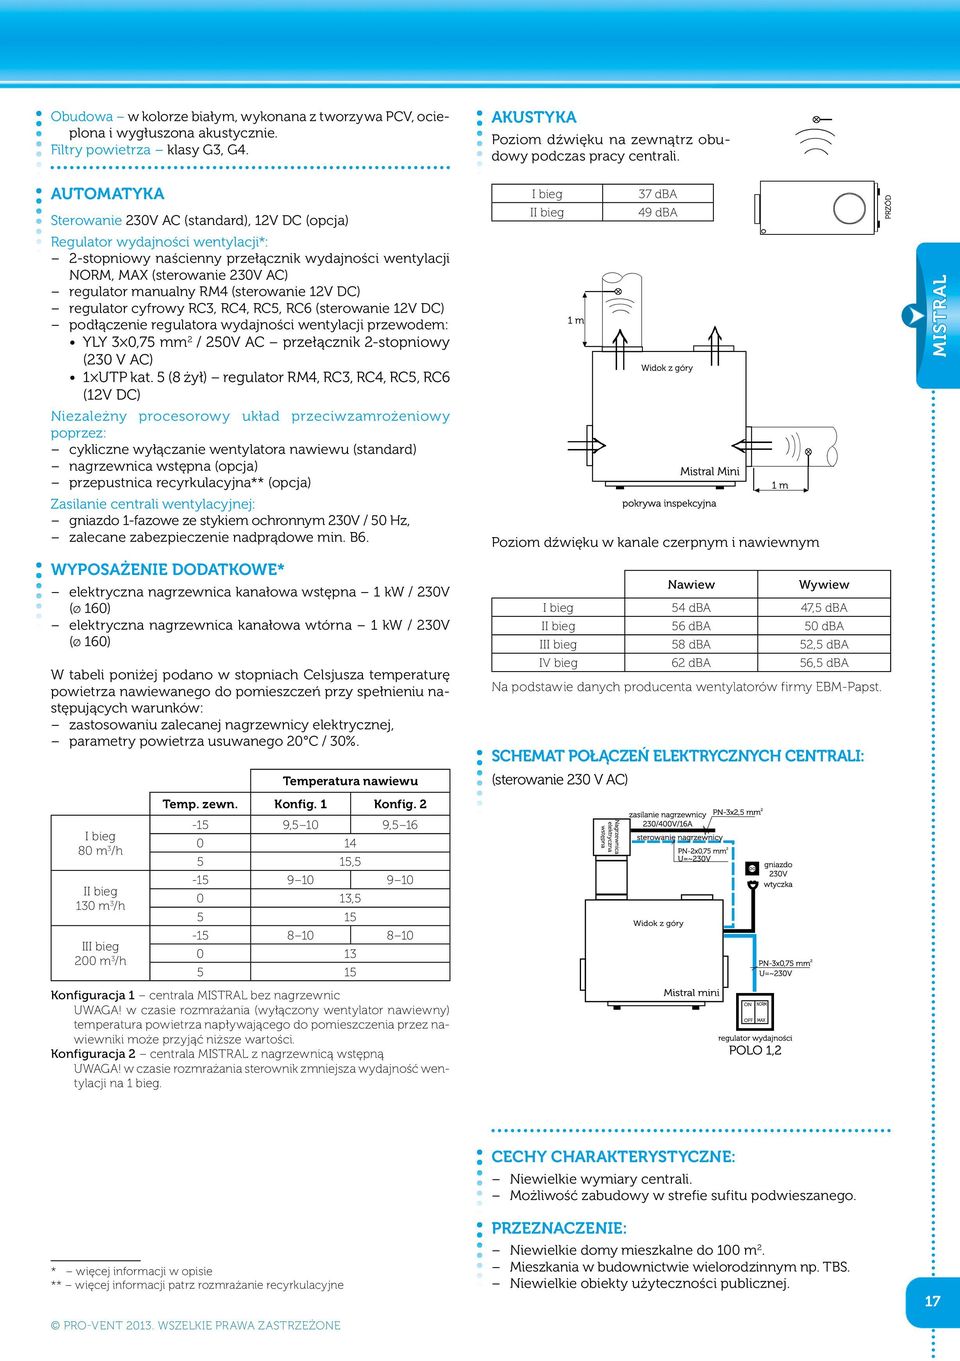 RM4 (sterowanie 12V DC) regulator cyfrowy RC3, RC4, RC5, RC6 (sterowanie 12V DC) podłączenie regulatora wydajności wentylacji przewodem: YLY 3 0,75 mm 2 / 250V AC przełącznik 2-stopniowy (230 V AC) 1